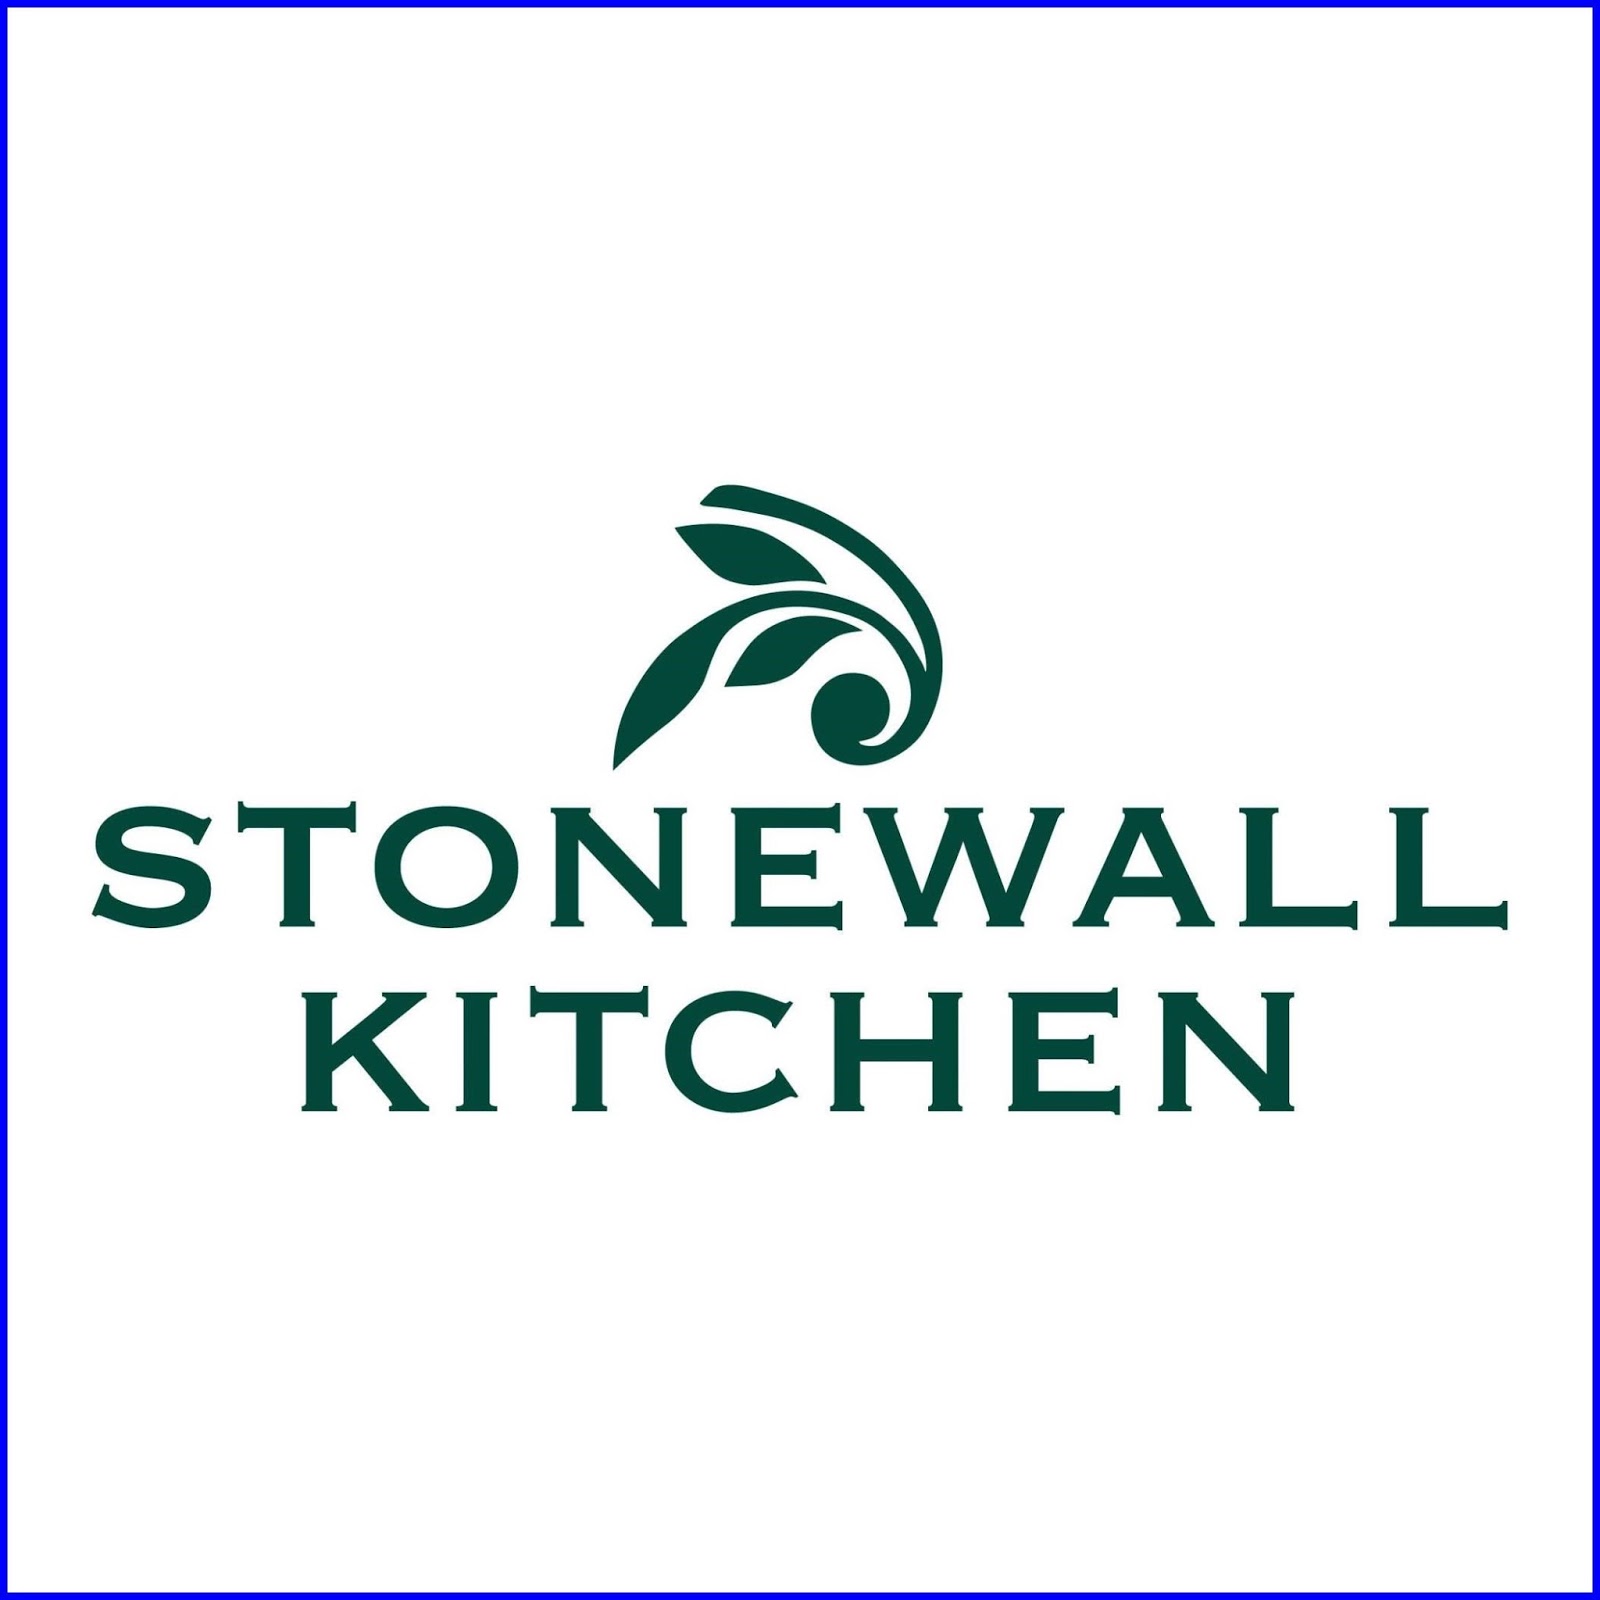 18 Stonewall Kitchen Outlet Stonewall Kitchen Best Kitchen Design Stonewall,Kitchen,Outlet